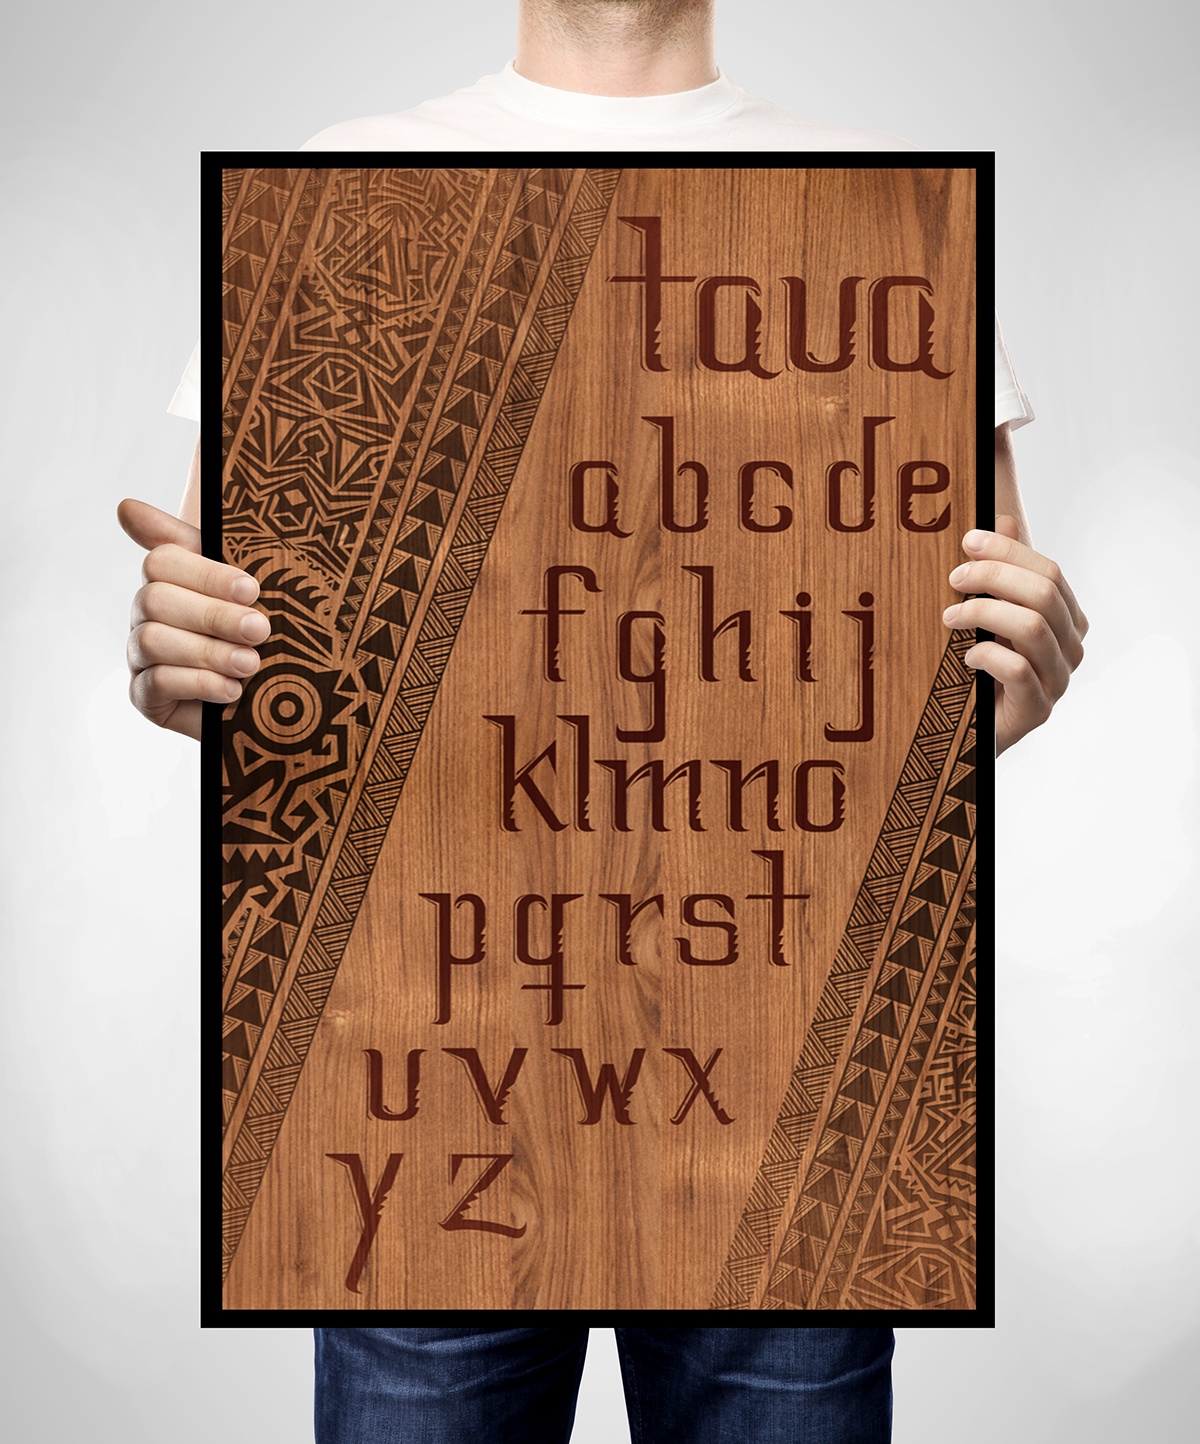 font typo maori tribal indigenous polynesian New Zealand polynesia wood warrior madera abecedario simetria alphabet poster